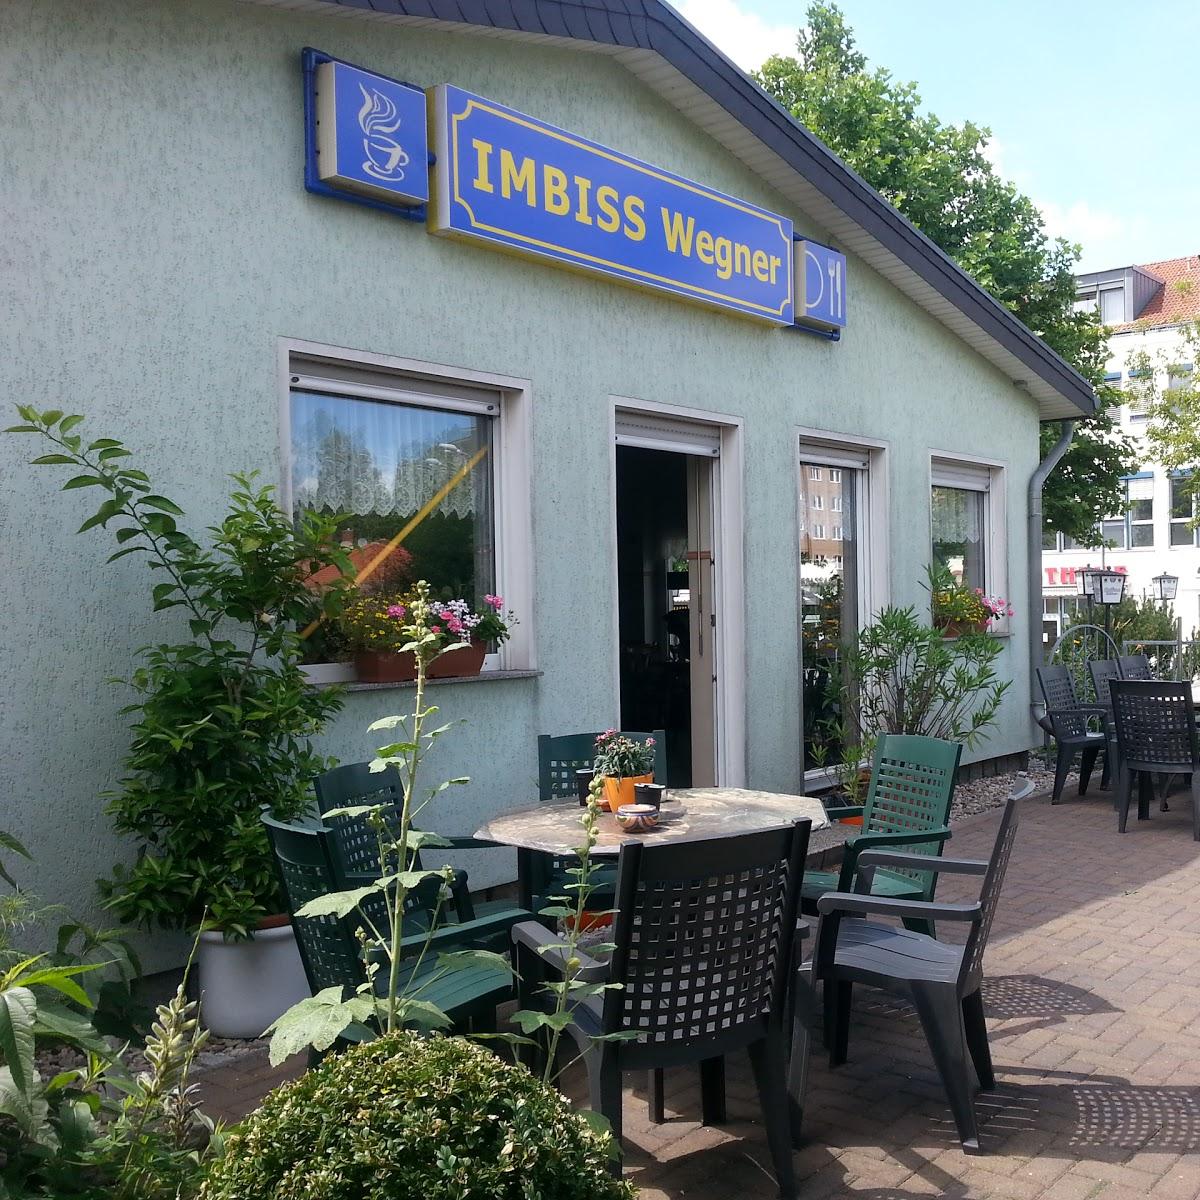 Restaurant "Imbiss Wegner" in Hoppegarten